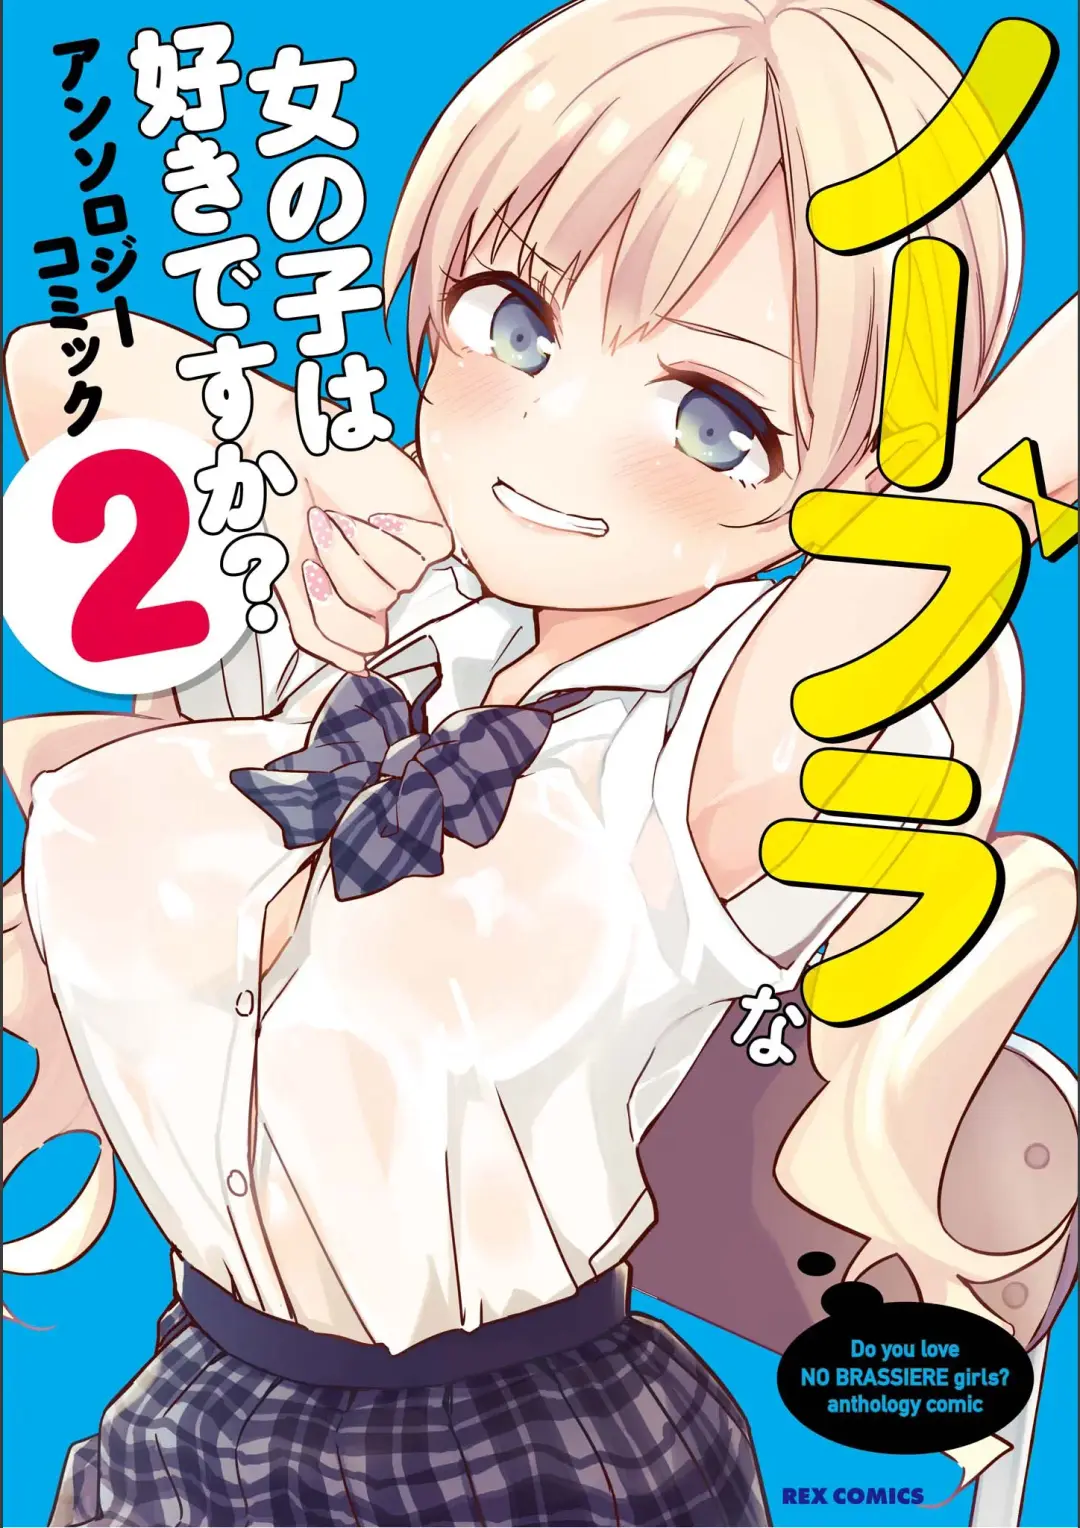 No Bra na Onnanoko wa Suki desu ka? Anthology Comic 2 - Do you love NO BRASSIERE girls? anthology comic Fhentai.net - Page 1